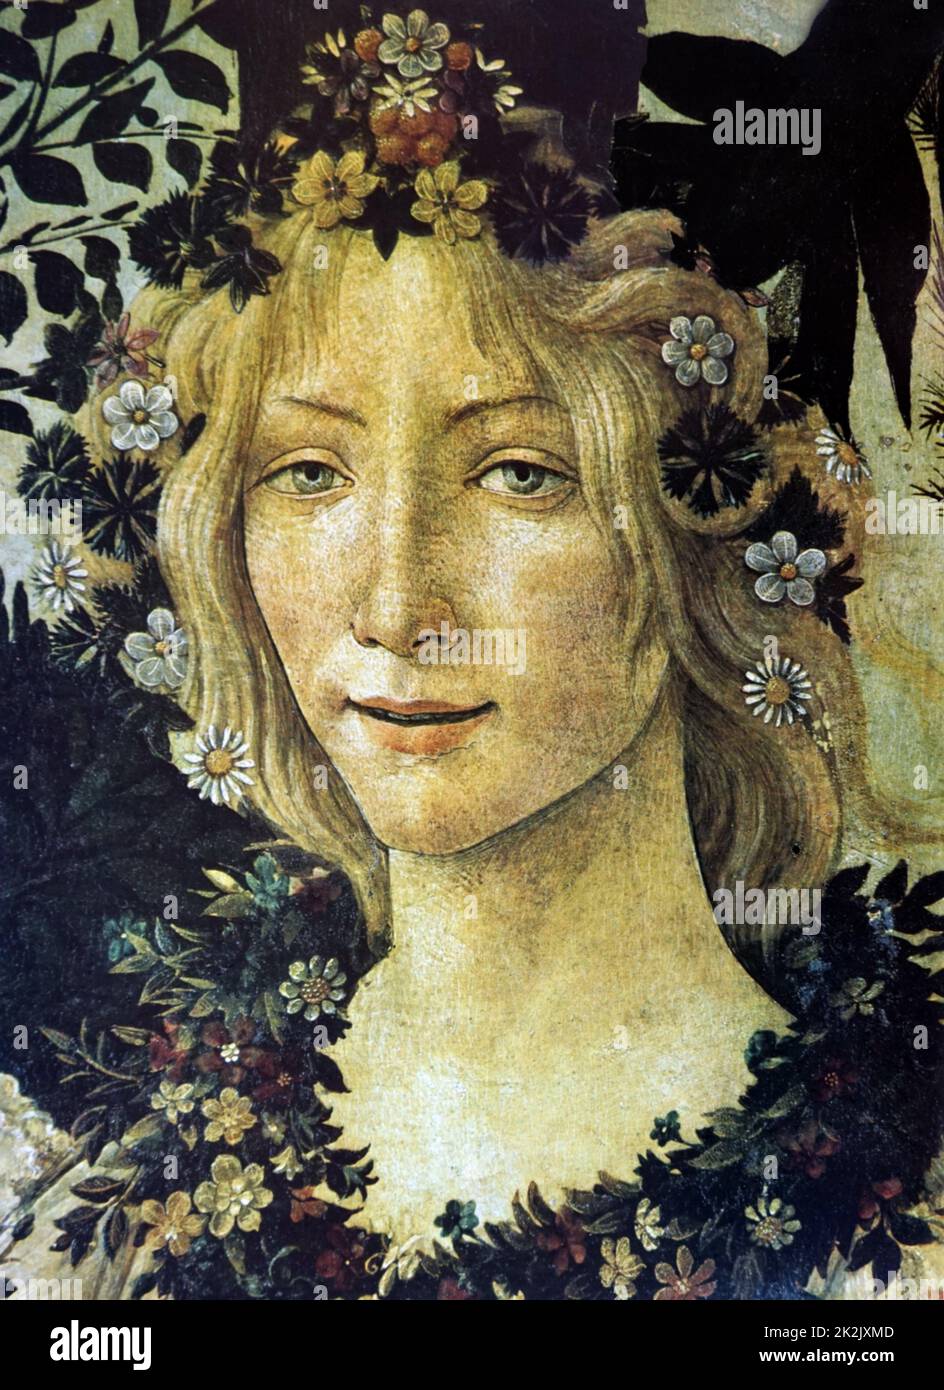 Detalle de la pintura "Primavera" representa a la diosa Flora por Sandro Botticelli (1445-1510), pintor italiano de principios del Renacimiento. Fecha del siglo XV. Foto de stock